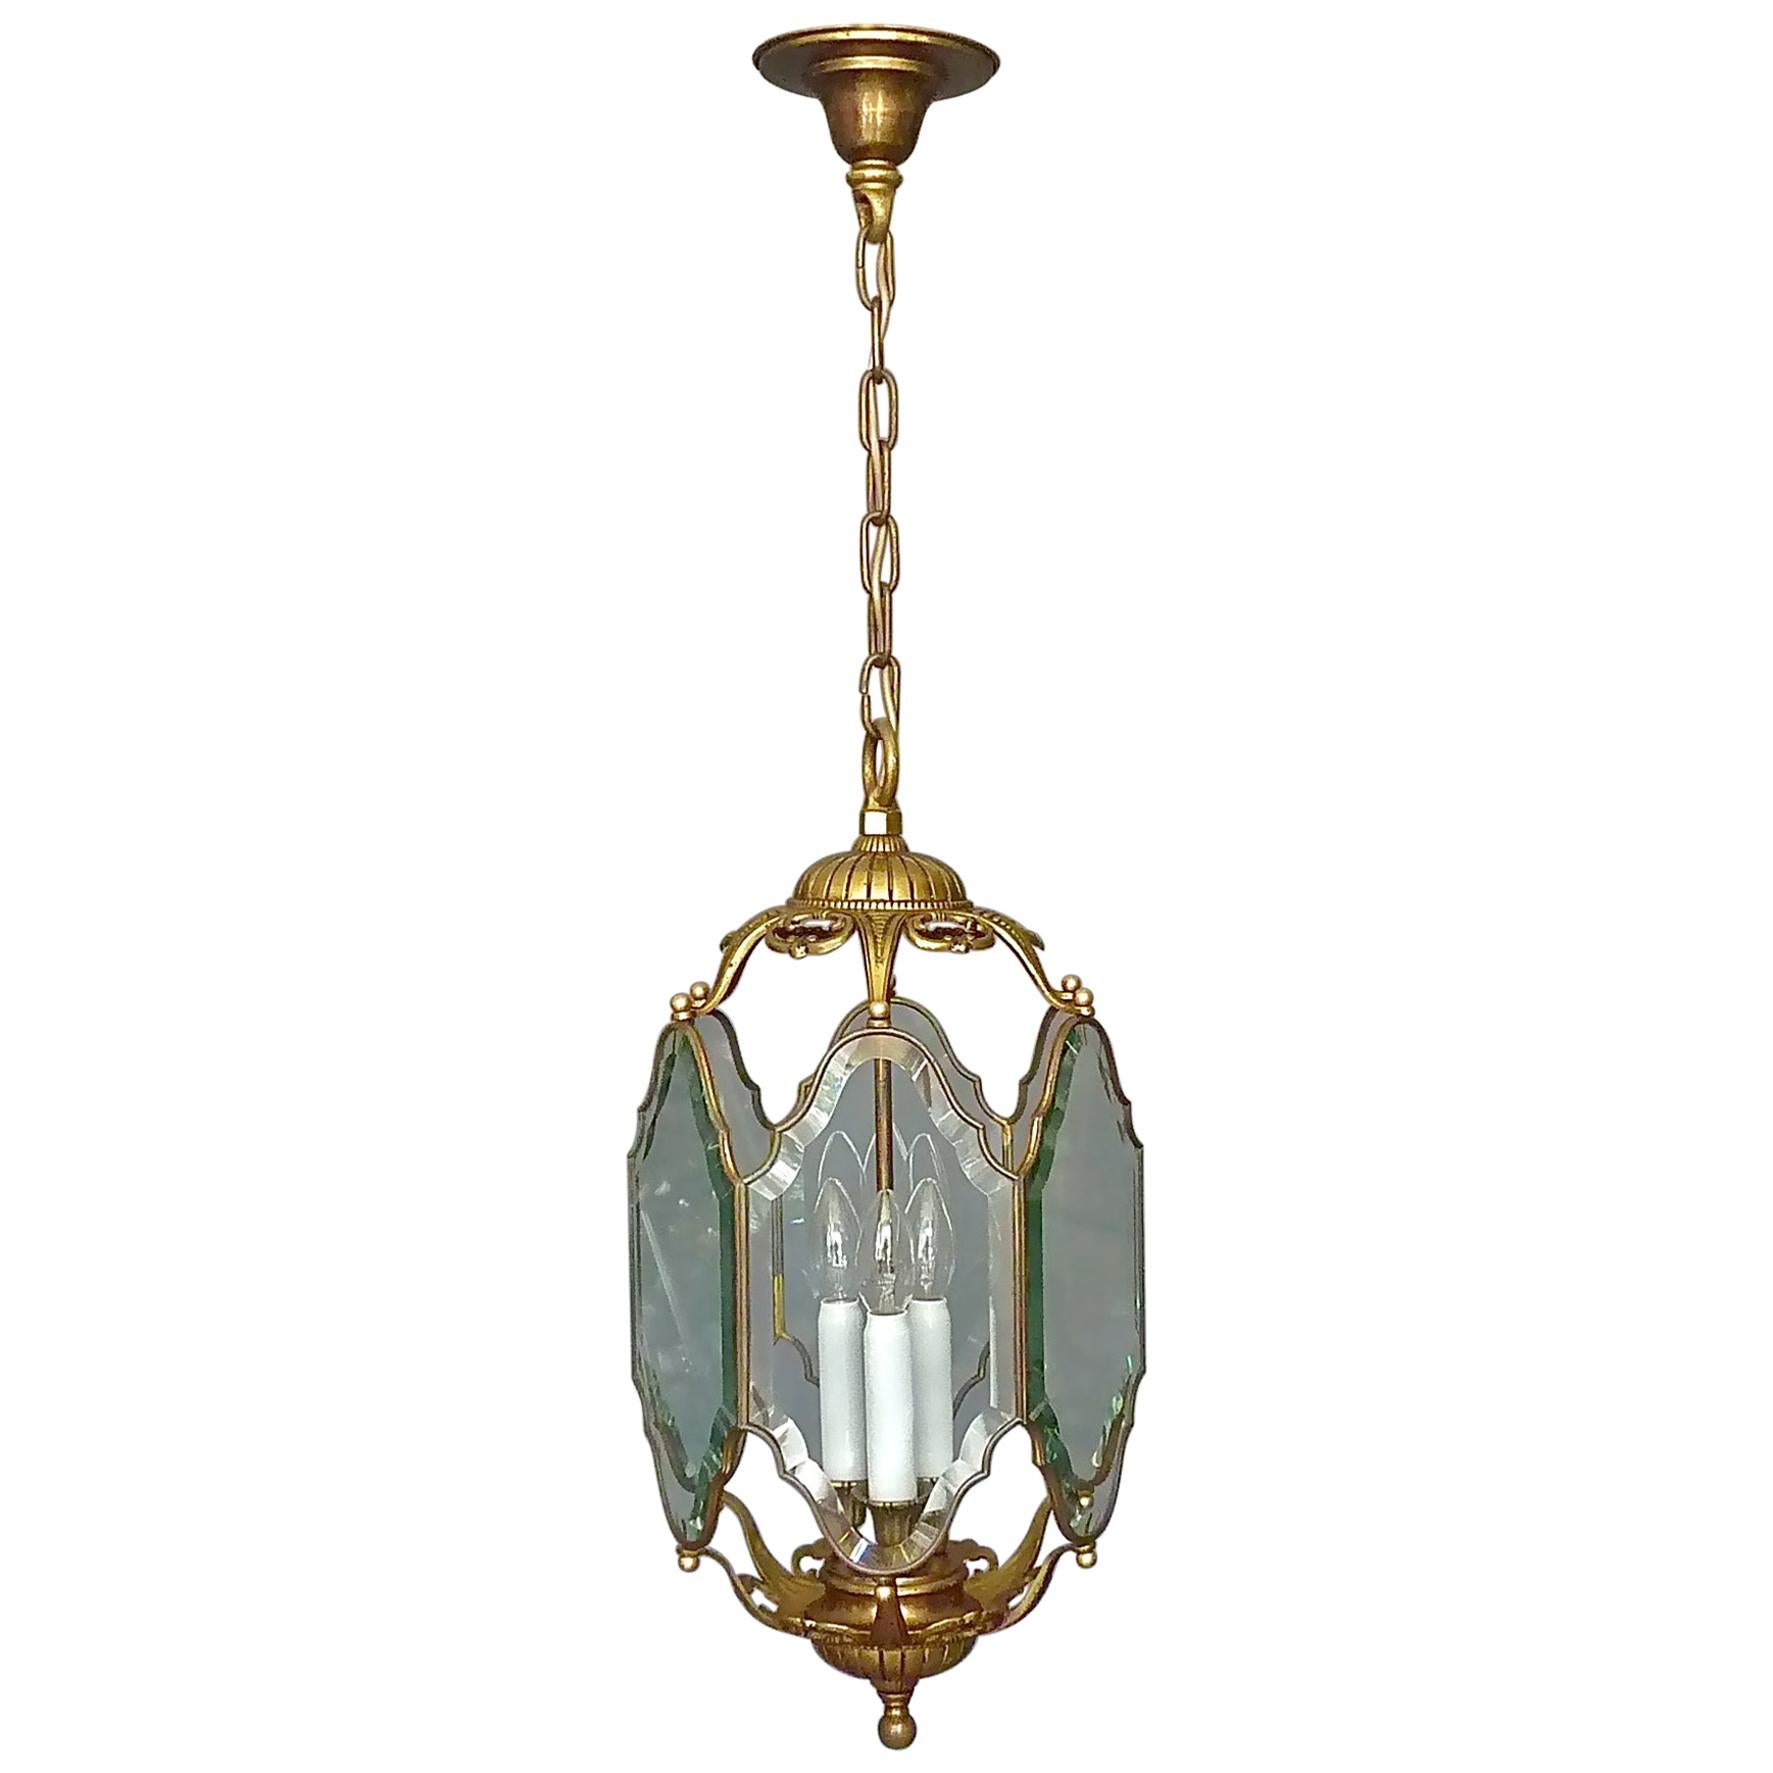 Grande lanterne française ancienne en cristal facetté verre bronze laiton 1880 - 1900